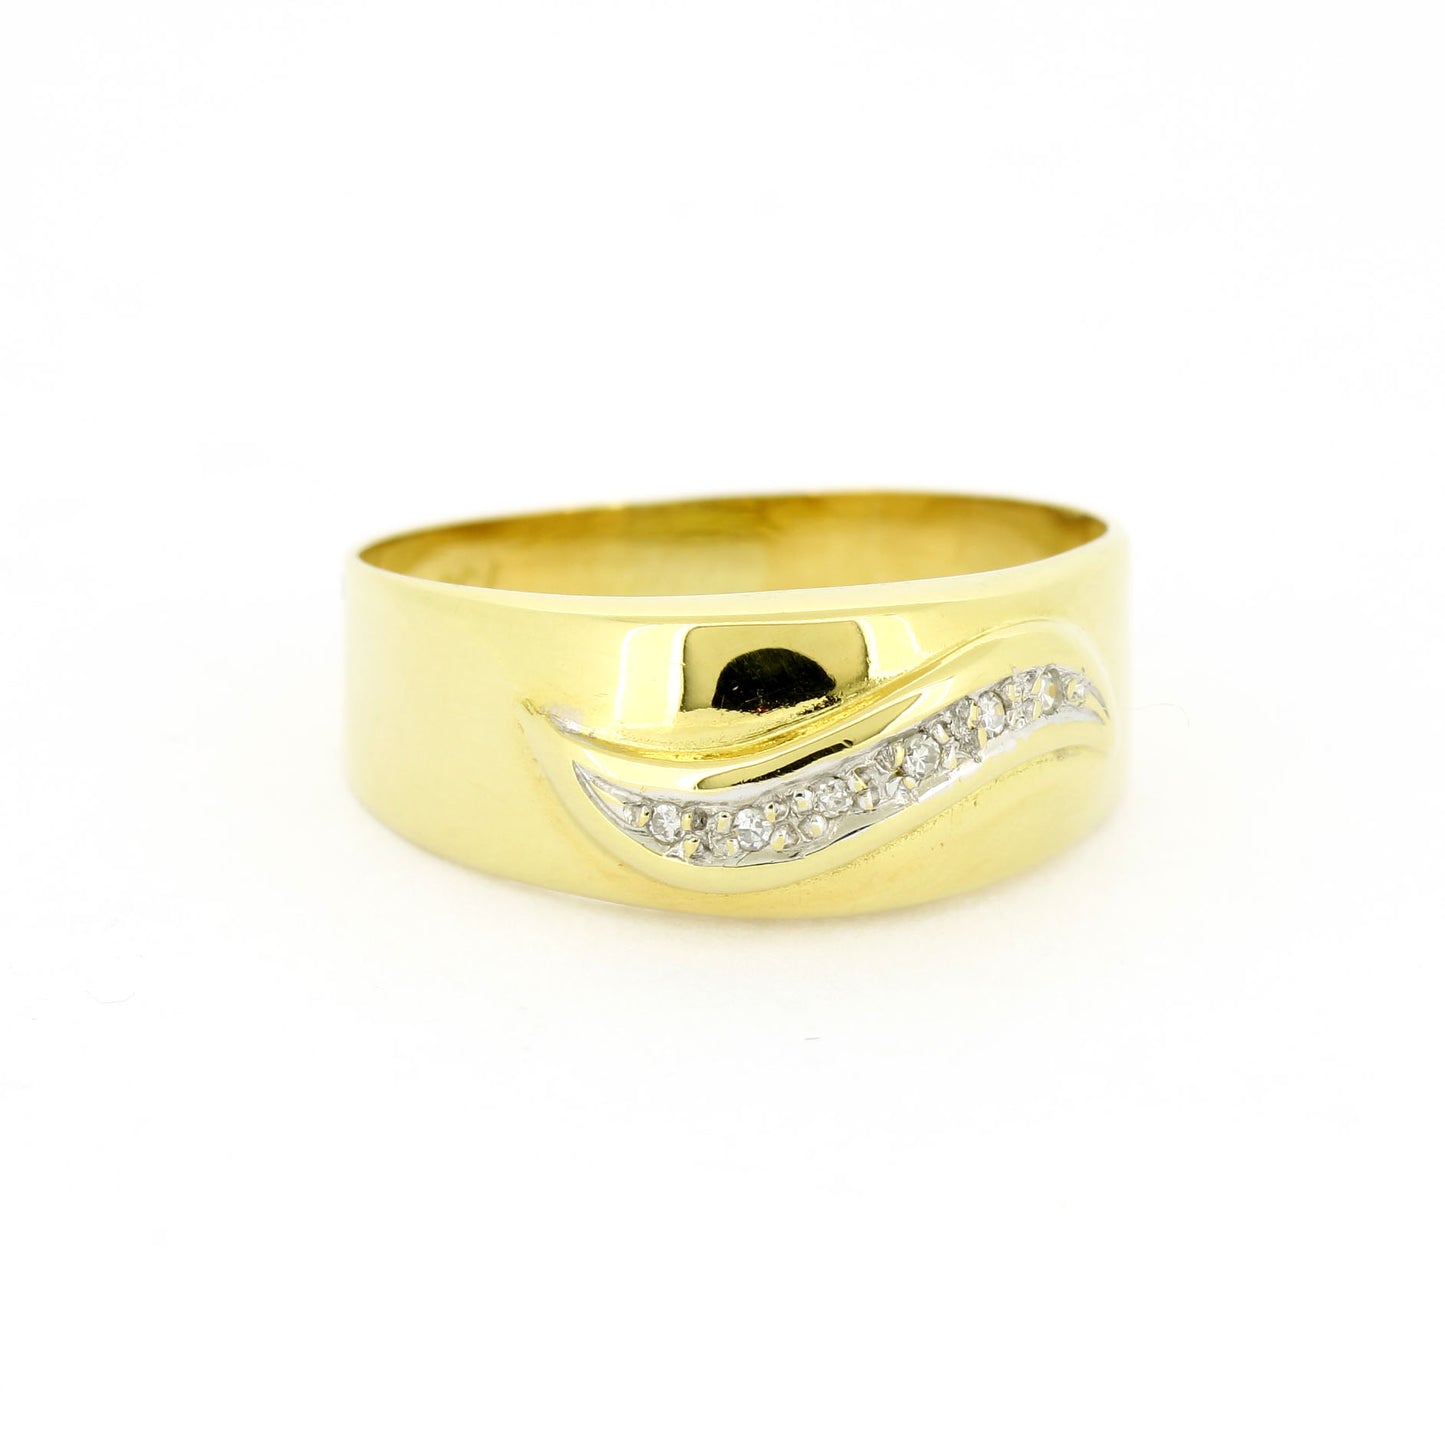 Ring 750 Gelbgold 18 Kt - 6 kleine Diamanten ca. 0,025 ct H - SI - Wert 390,-